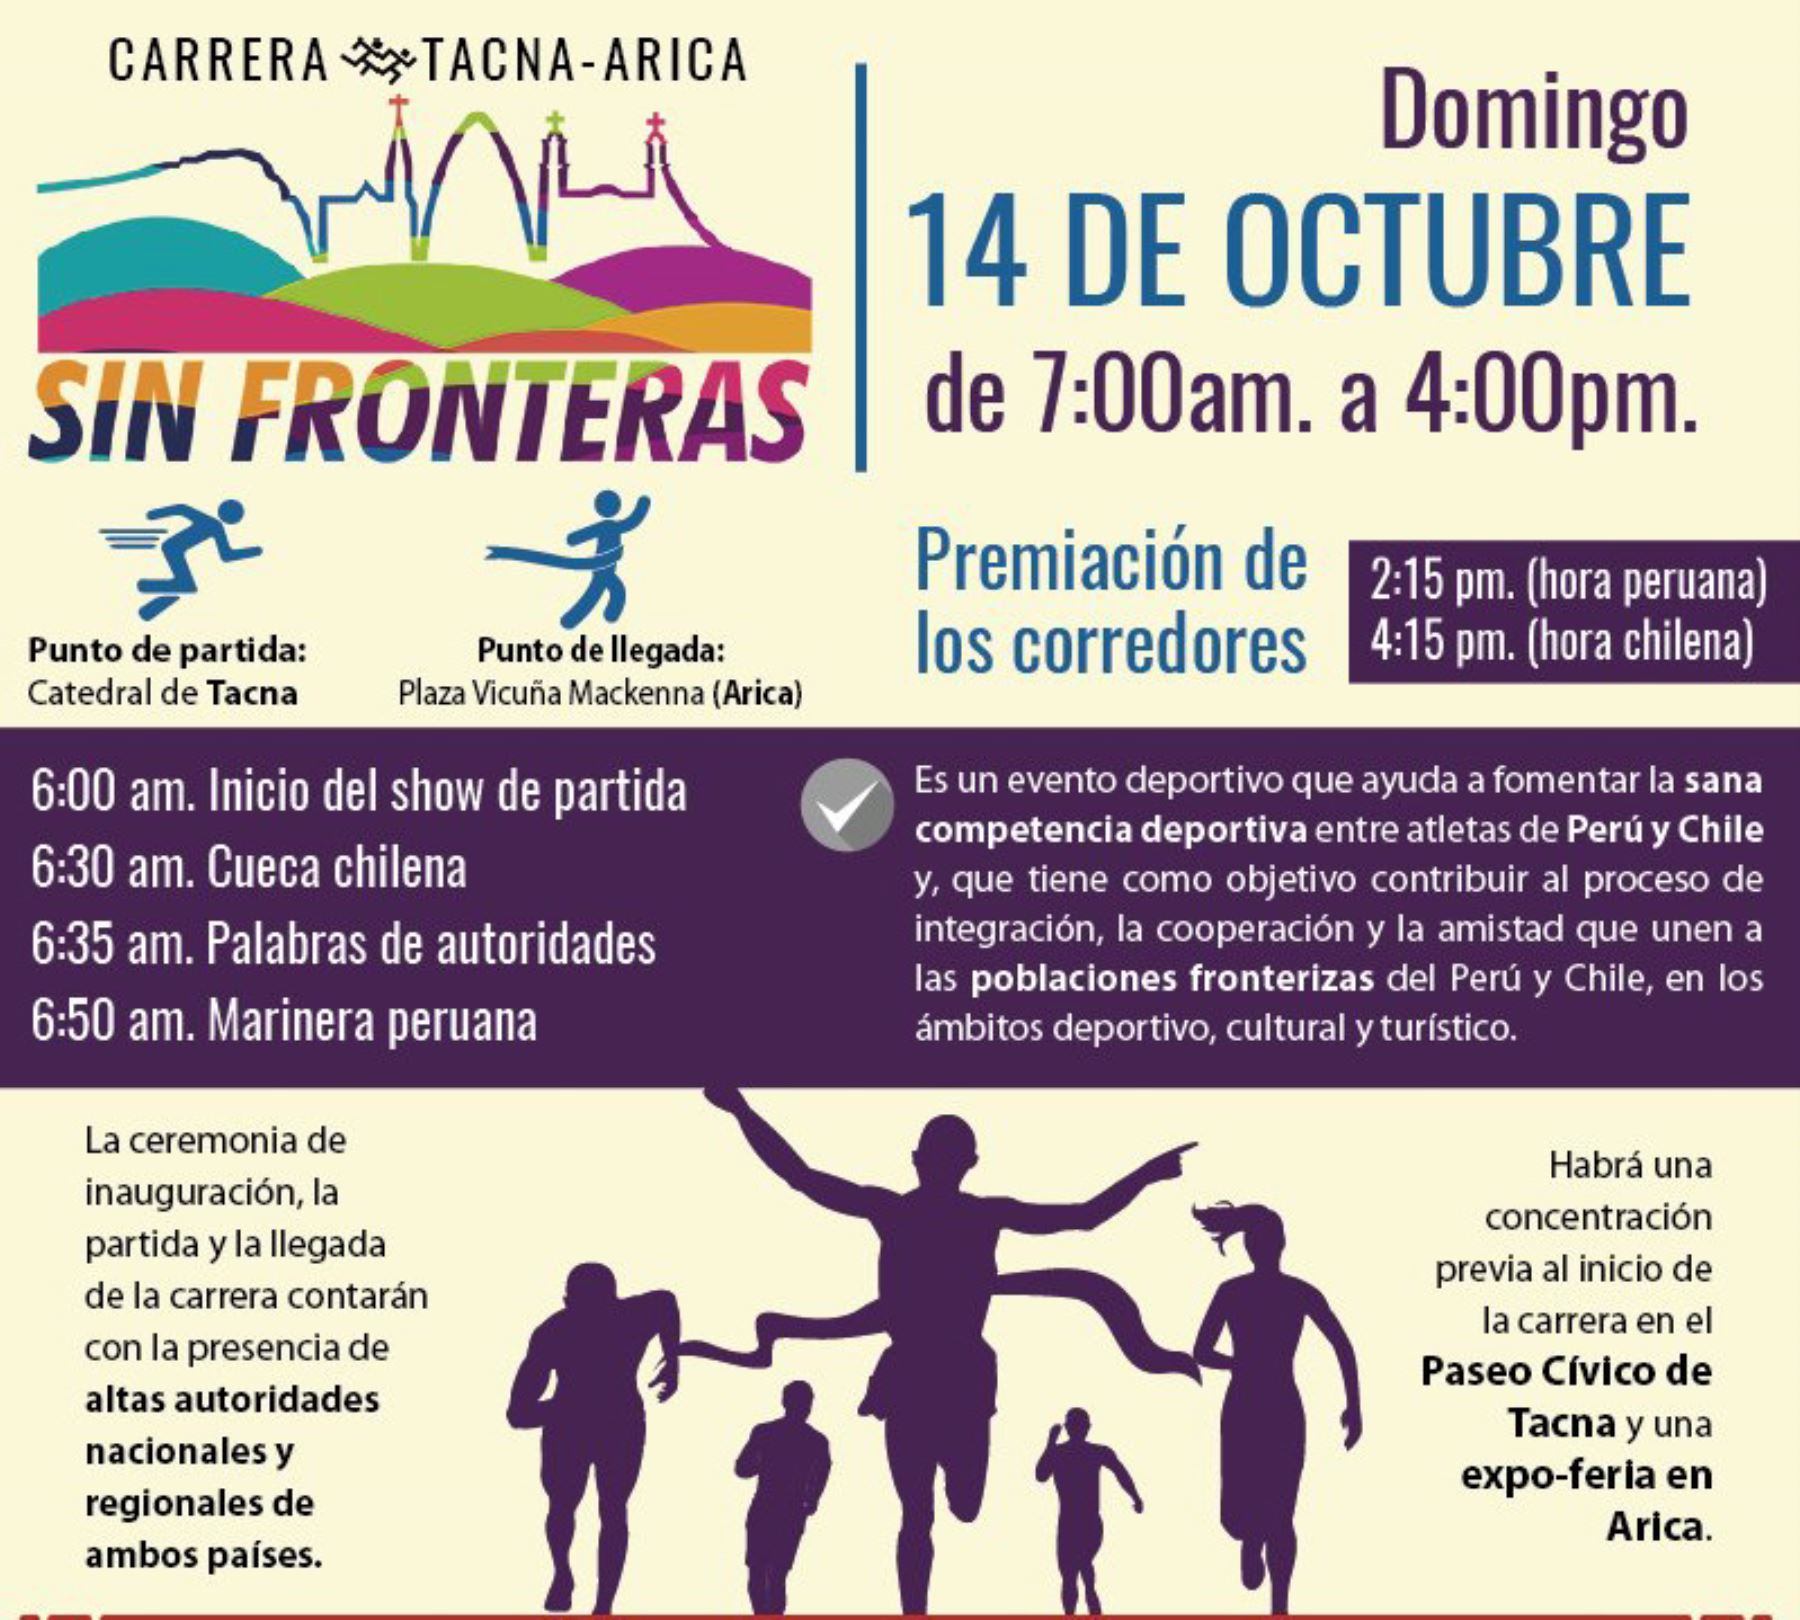 Con una Marinera peruana y una Cueca chilena frente a la Catedral de Tacna, se dará inicio mañana domingo a la primera maratón de 60 kilómetros, denominada “Carrera sin Fronteras”, que unirá las ciudades de Tacna y Arica, informó el Ministerio de Relaciones Exteriores.